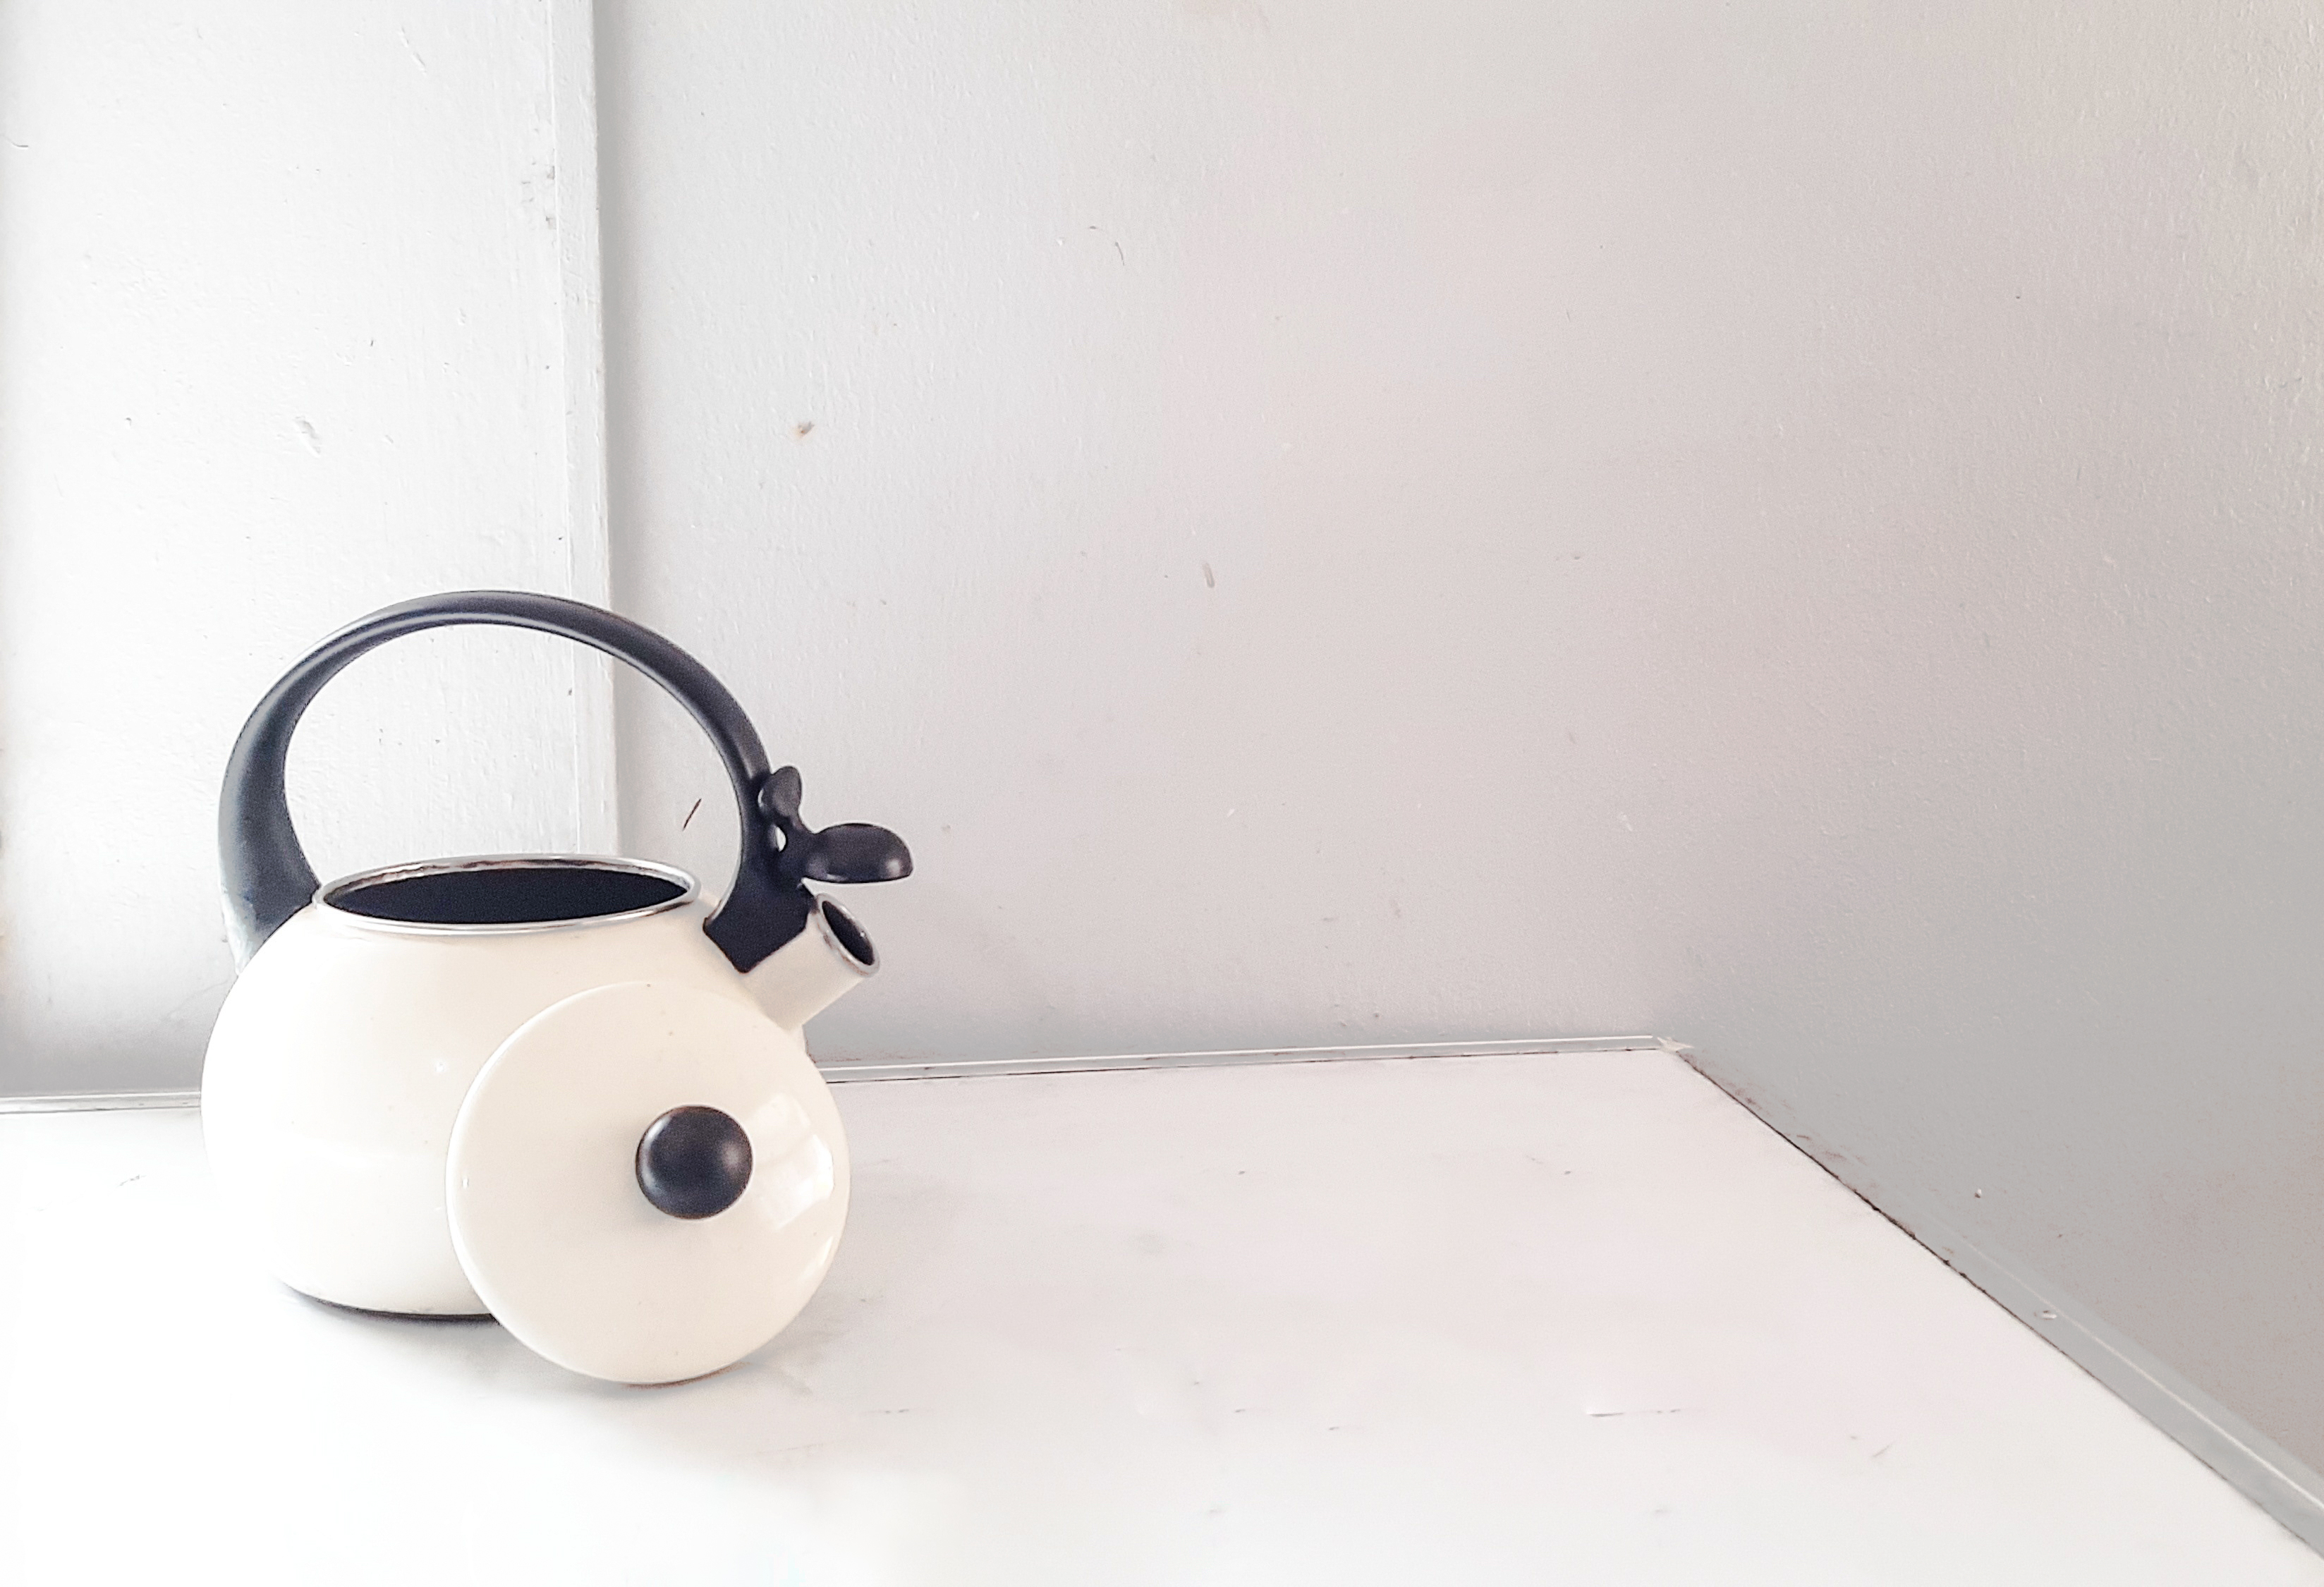 tea-kettle-on-white-background.jpg